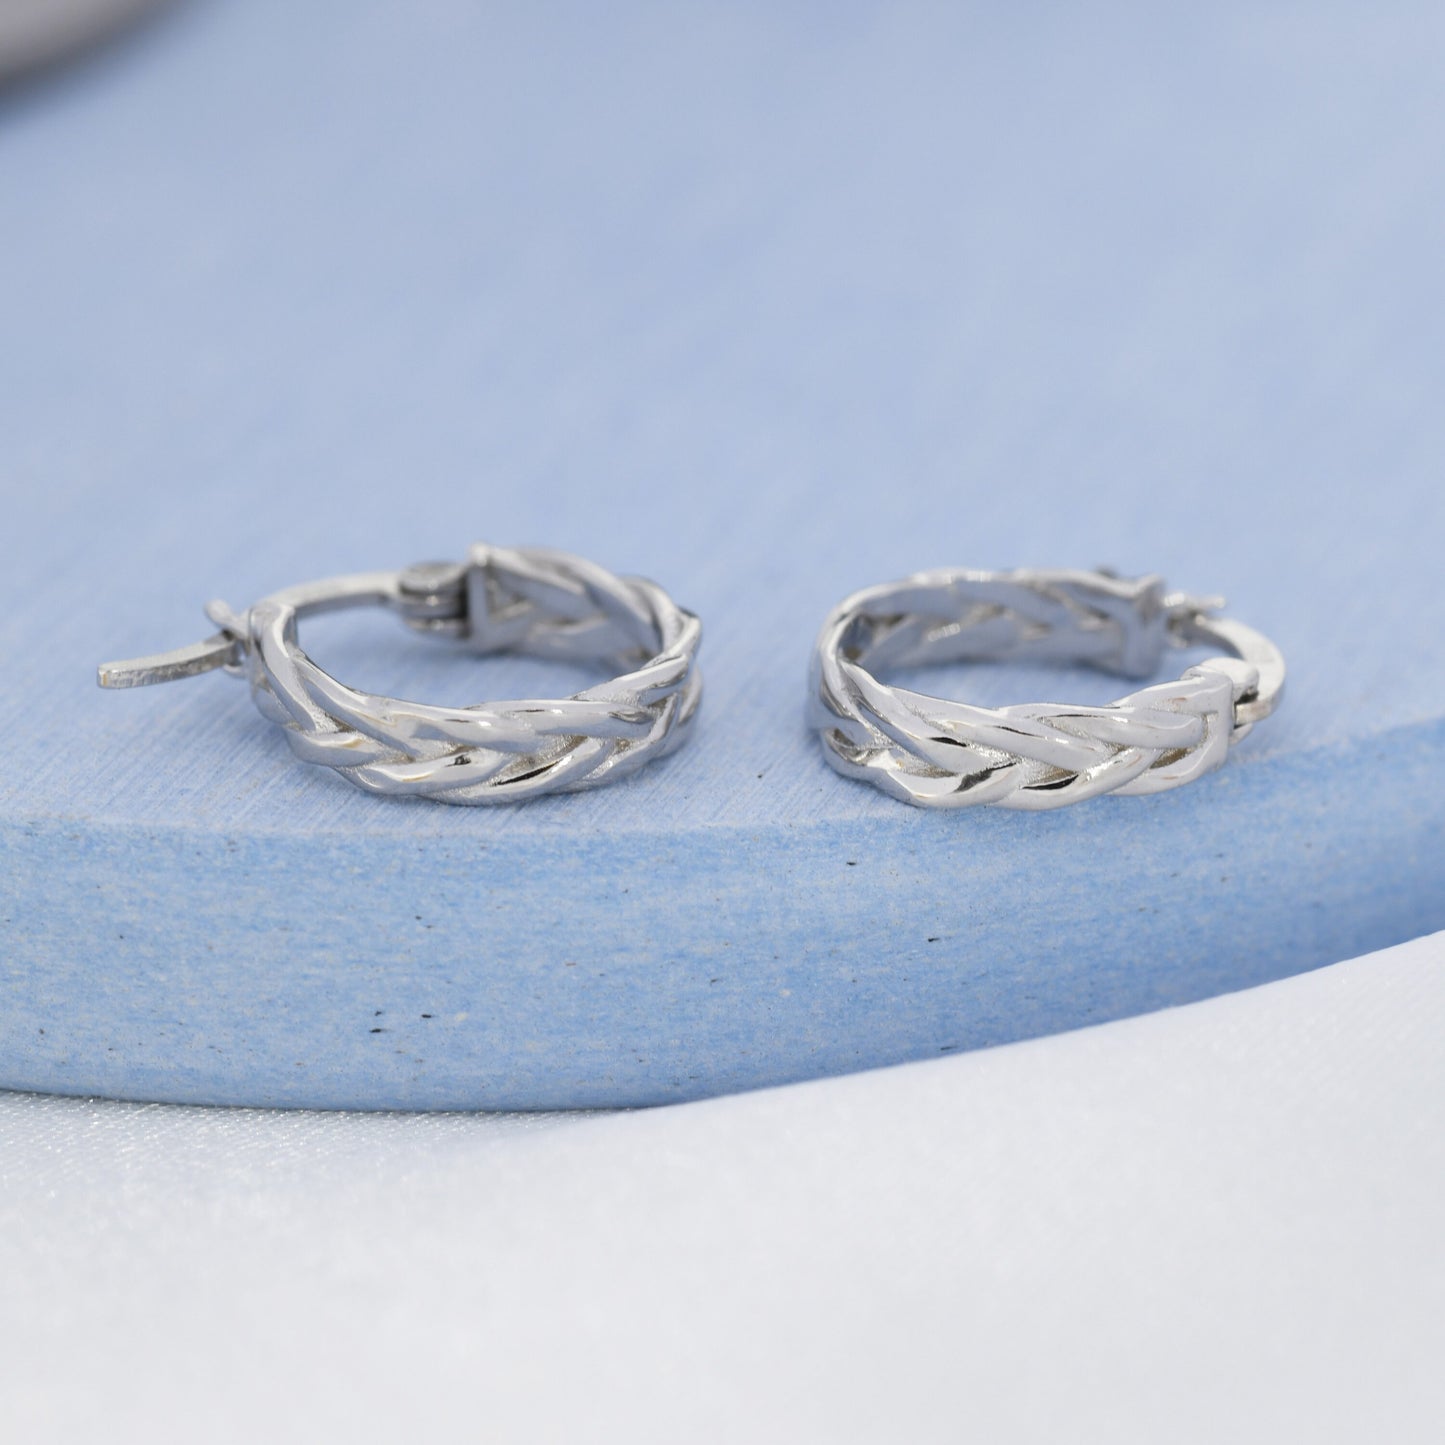 Braided Hoop Earrings in Sterling Silver, Silver or Gold or Rose Gold, Twist Hoops, Braid Geometric Hoop Earrings, 10mm Inner Diameter